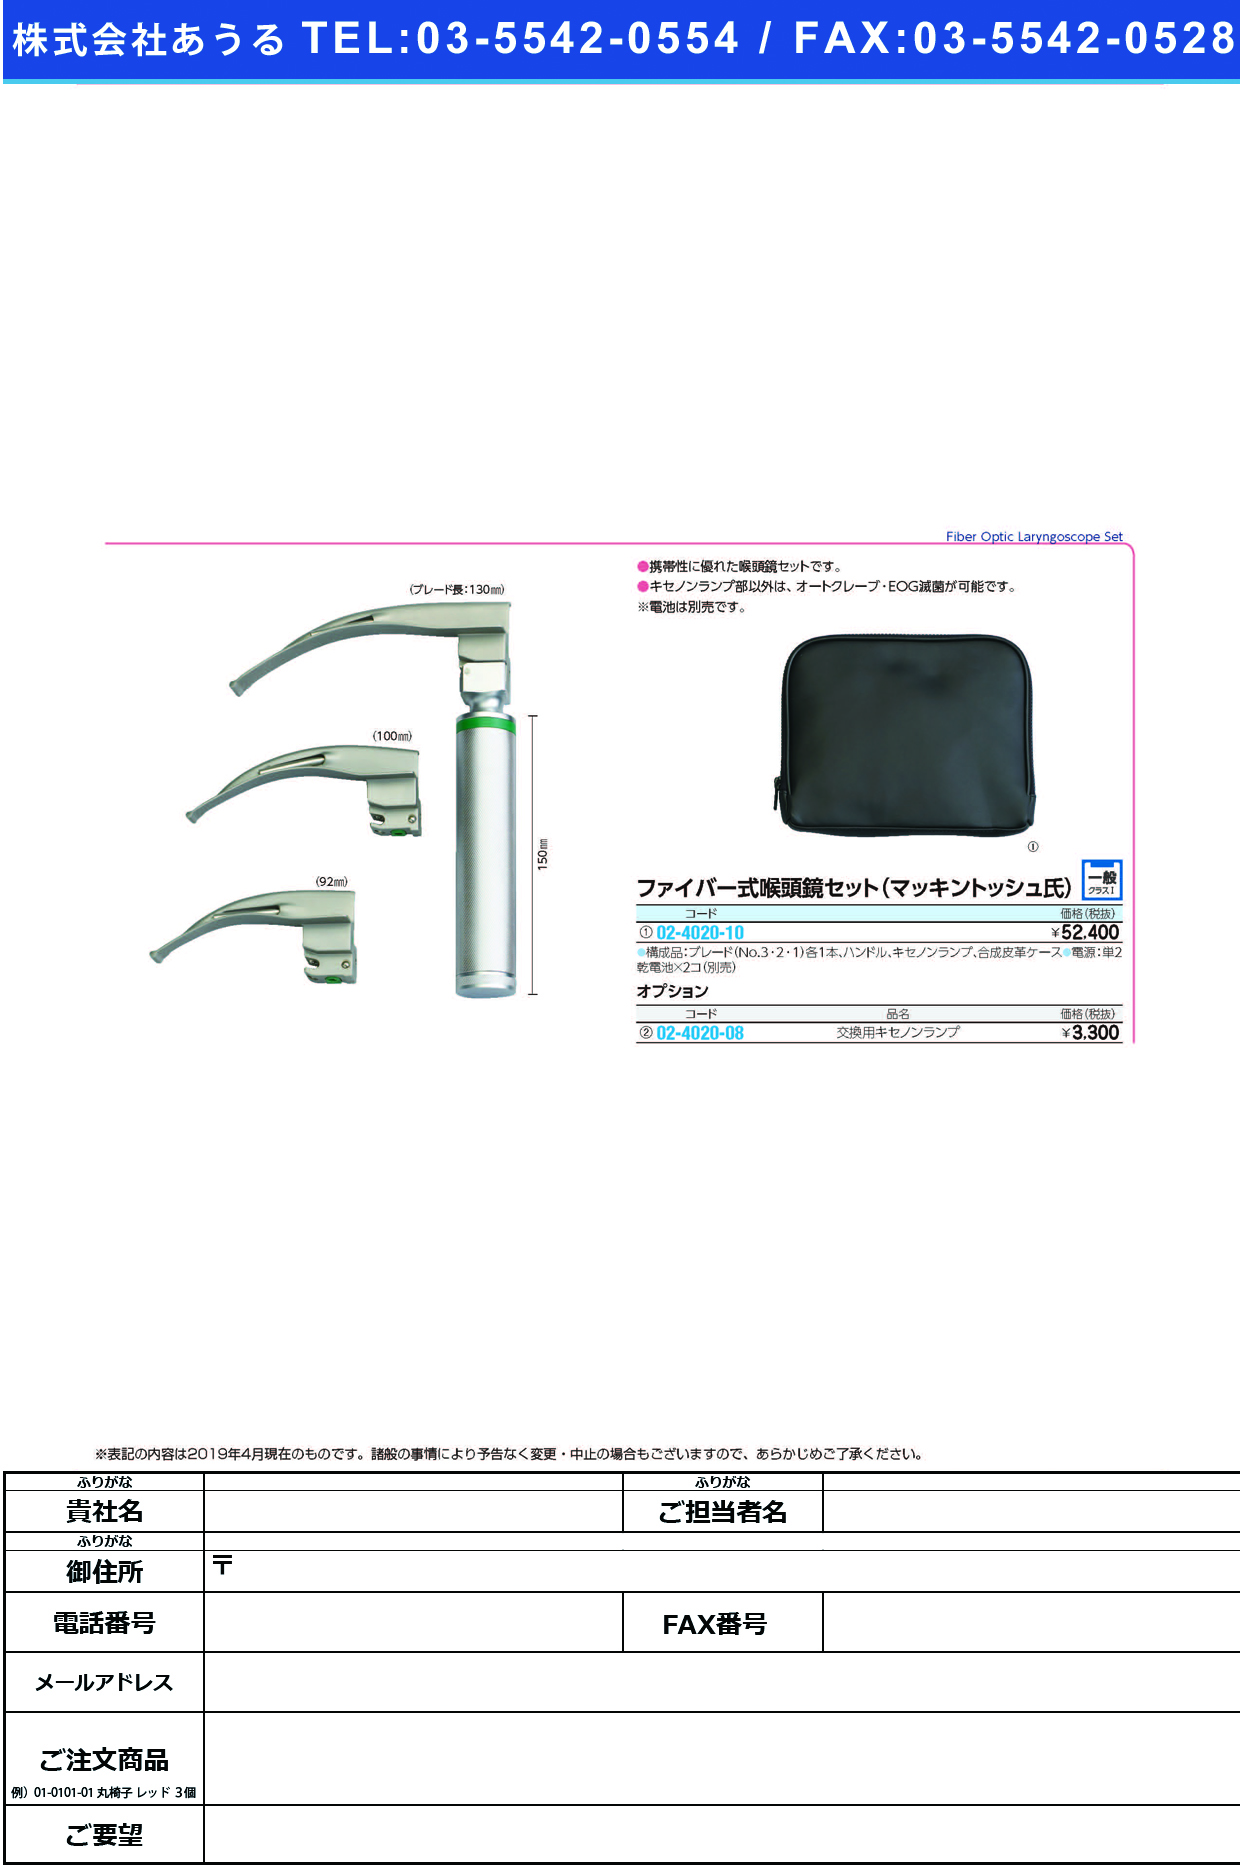 (02-4020-08)ファイバー式喉頭鏡用キセノンランプ 2.5V ｺｳﾄｳｷｮｳﾖｳｷｾﾉﾝﾗﾝﾌﾟ【1個単位】【2019年カタログ商品】